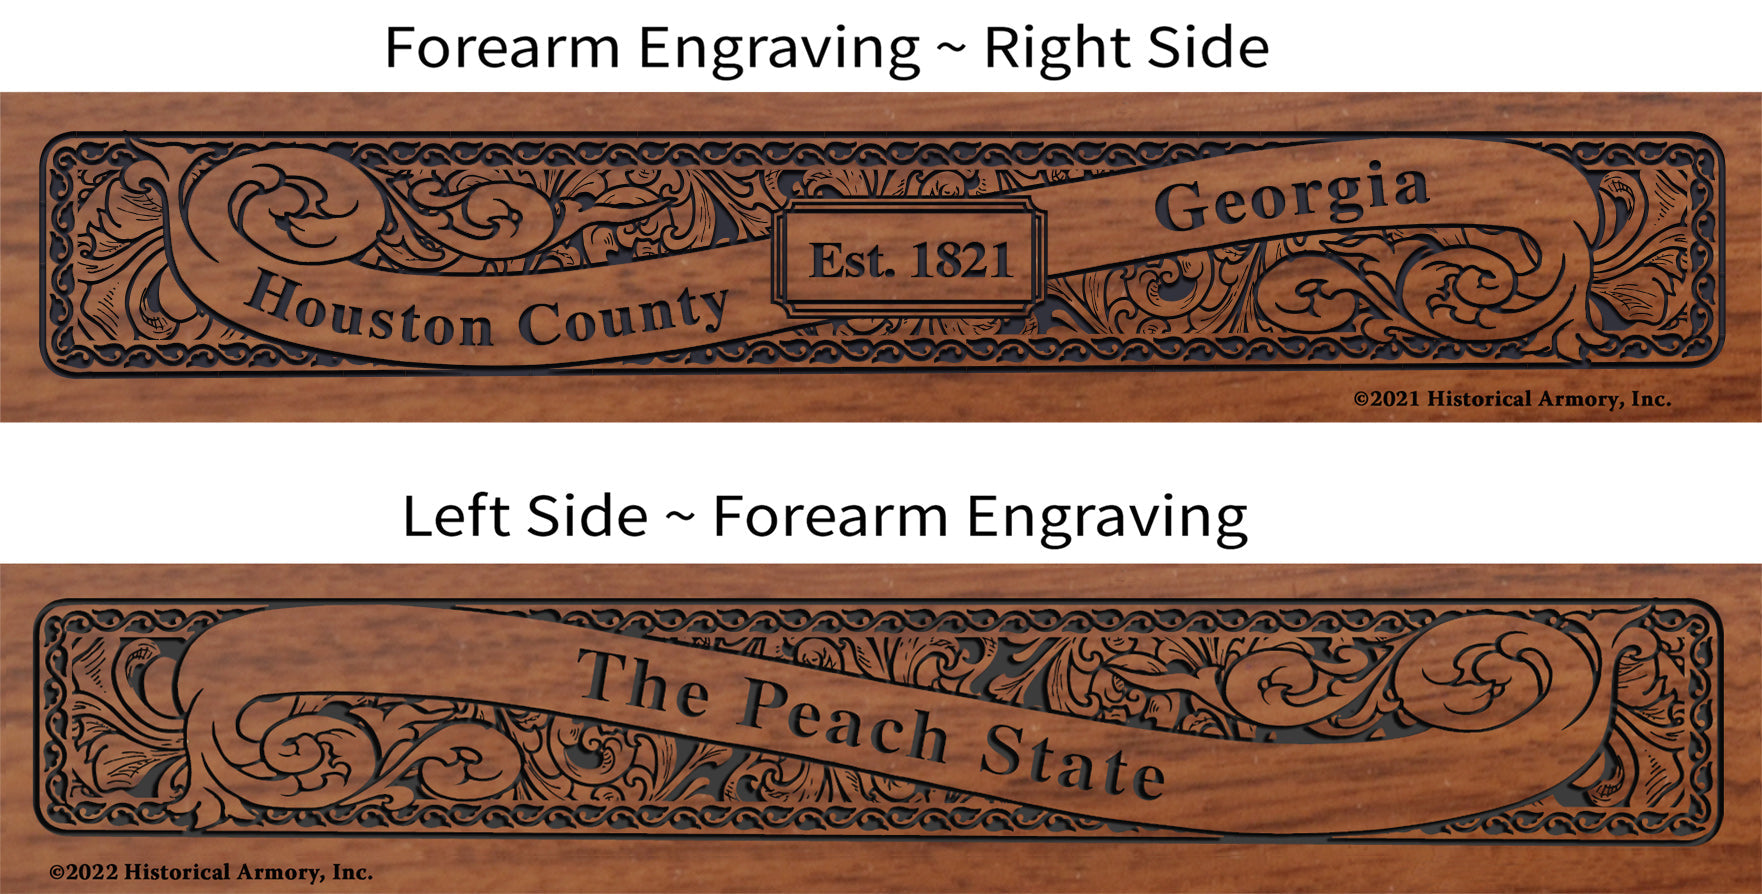 Houston County Georgia Establishment and Motto History Engraved Rifle Forearm